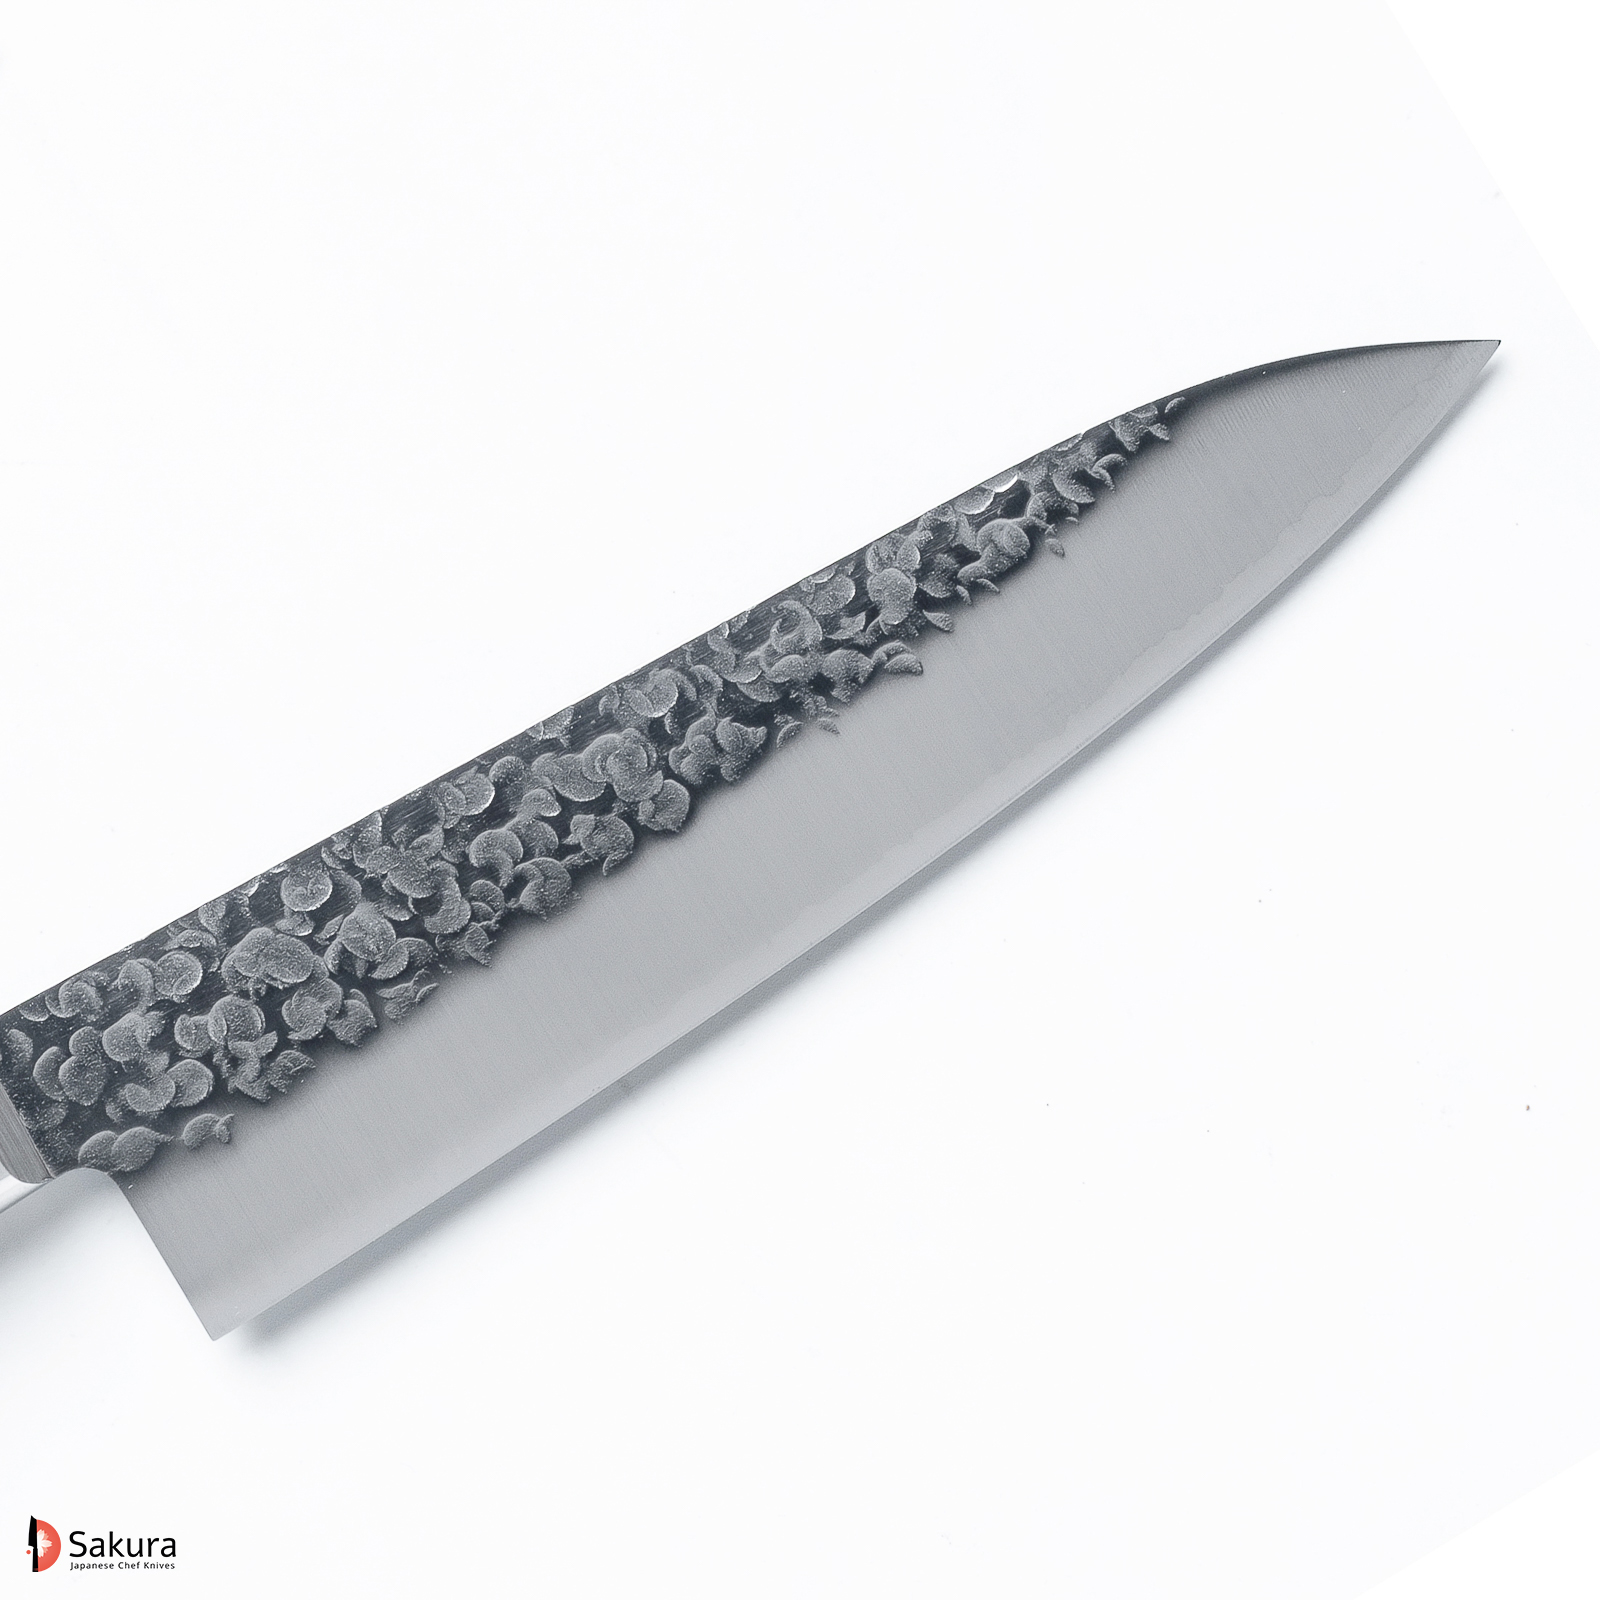 סכין שף רב תכליתית גִּיוּטוֹ 180מ״מ פלדת VG10 Special גימור מט מלוטש עם ריקוע פטיש טאקאמורה יפן מק״ט SKTAKATKMTK252243